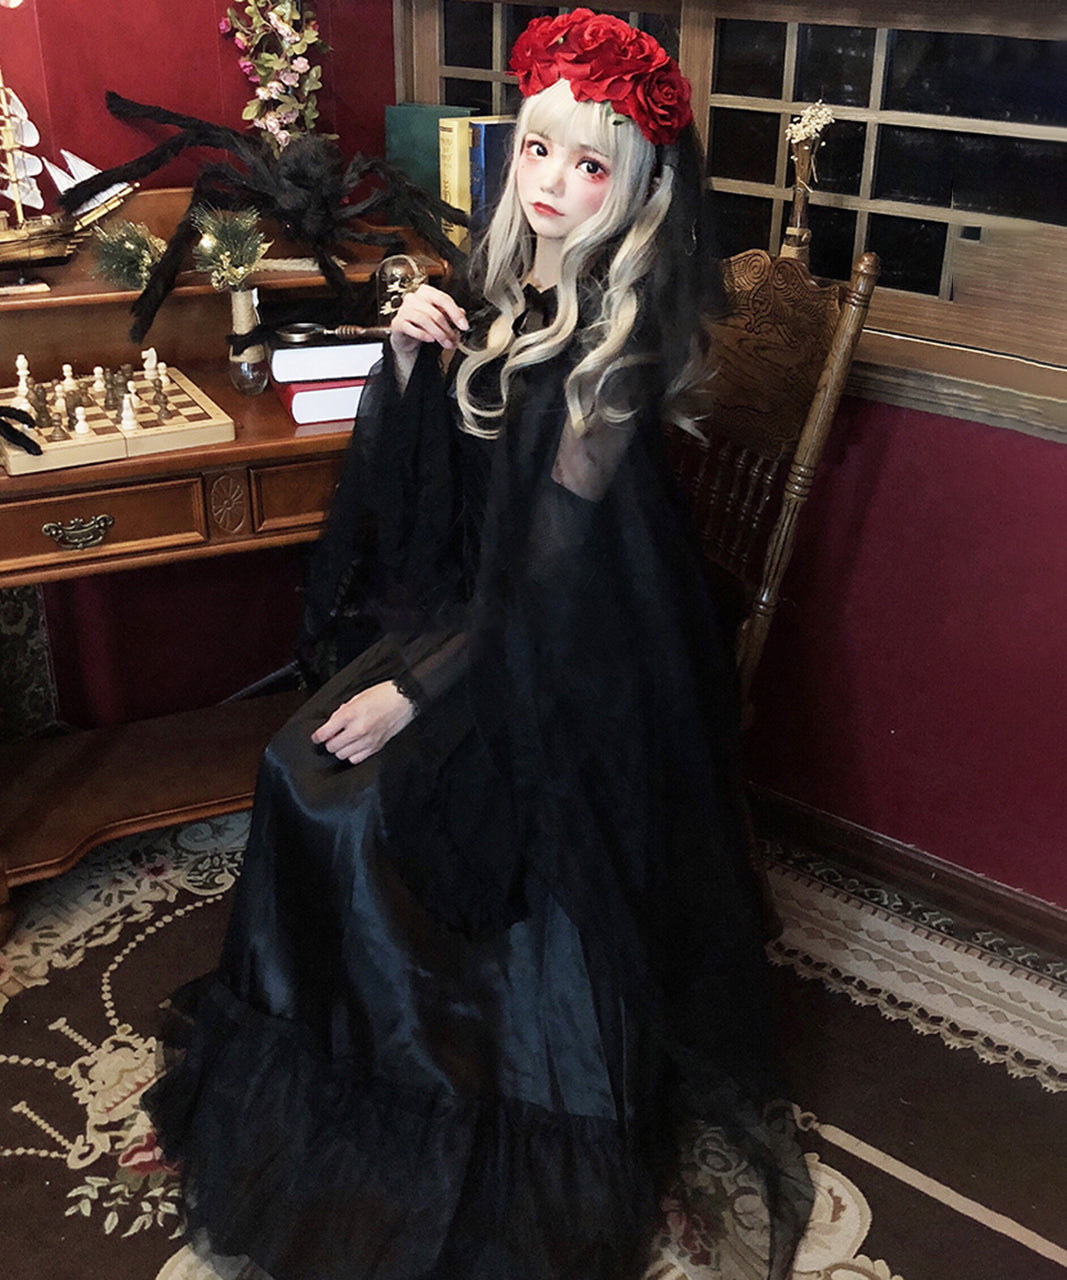 ハロウィン衣装 仮装 ゴースト 花嫁 ロングドレス 薔薇のヴェール付き 黒